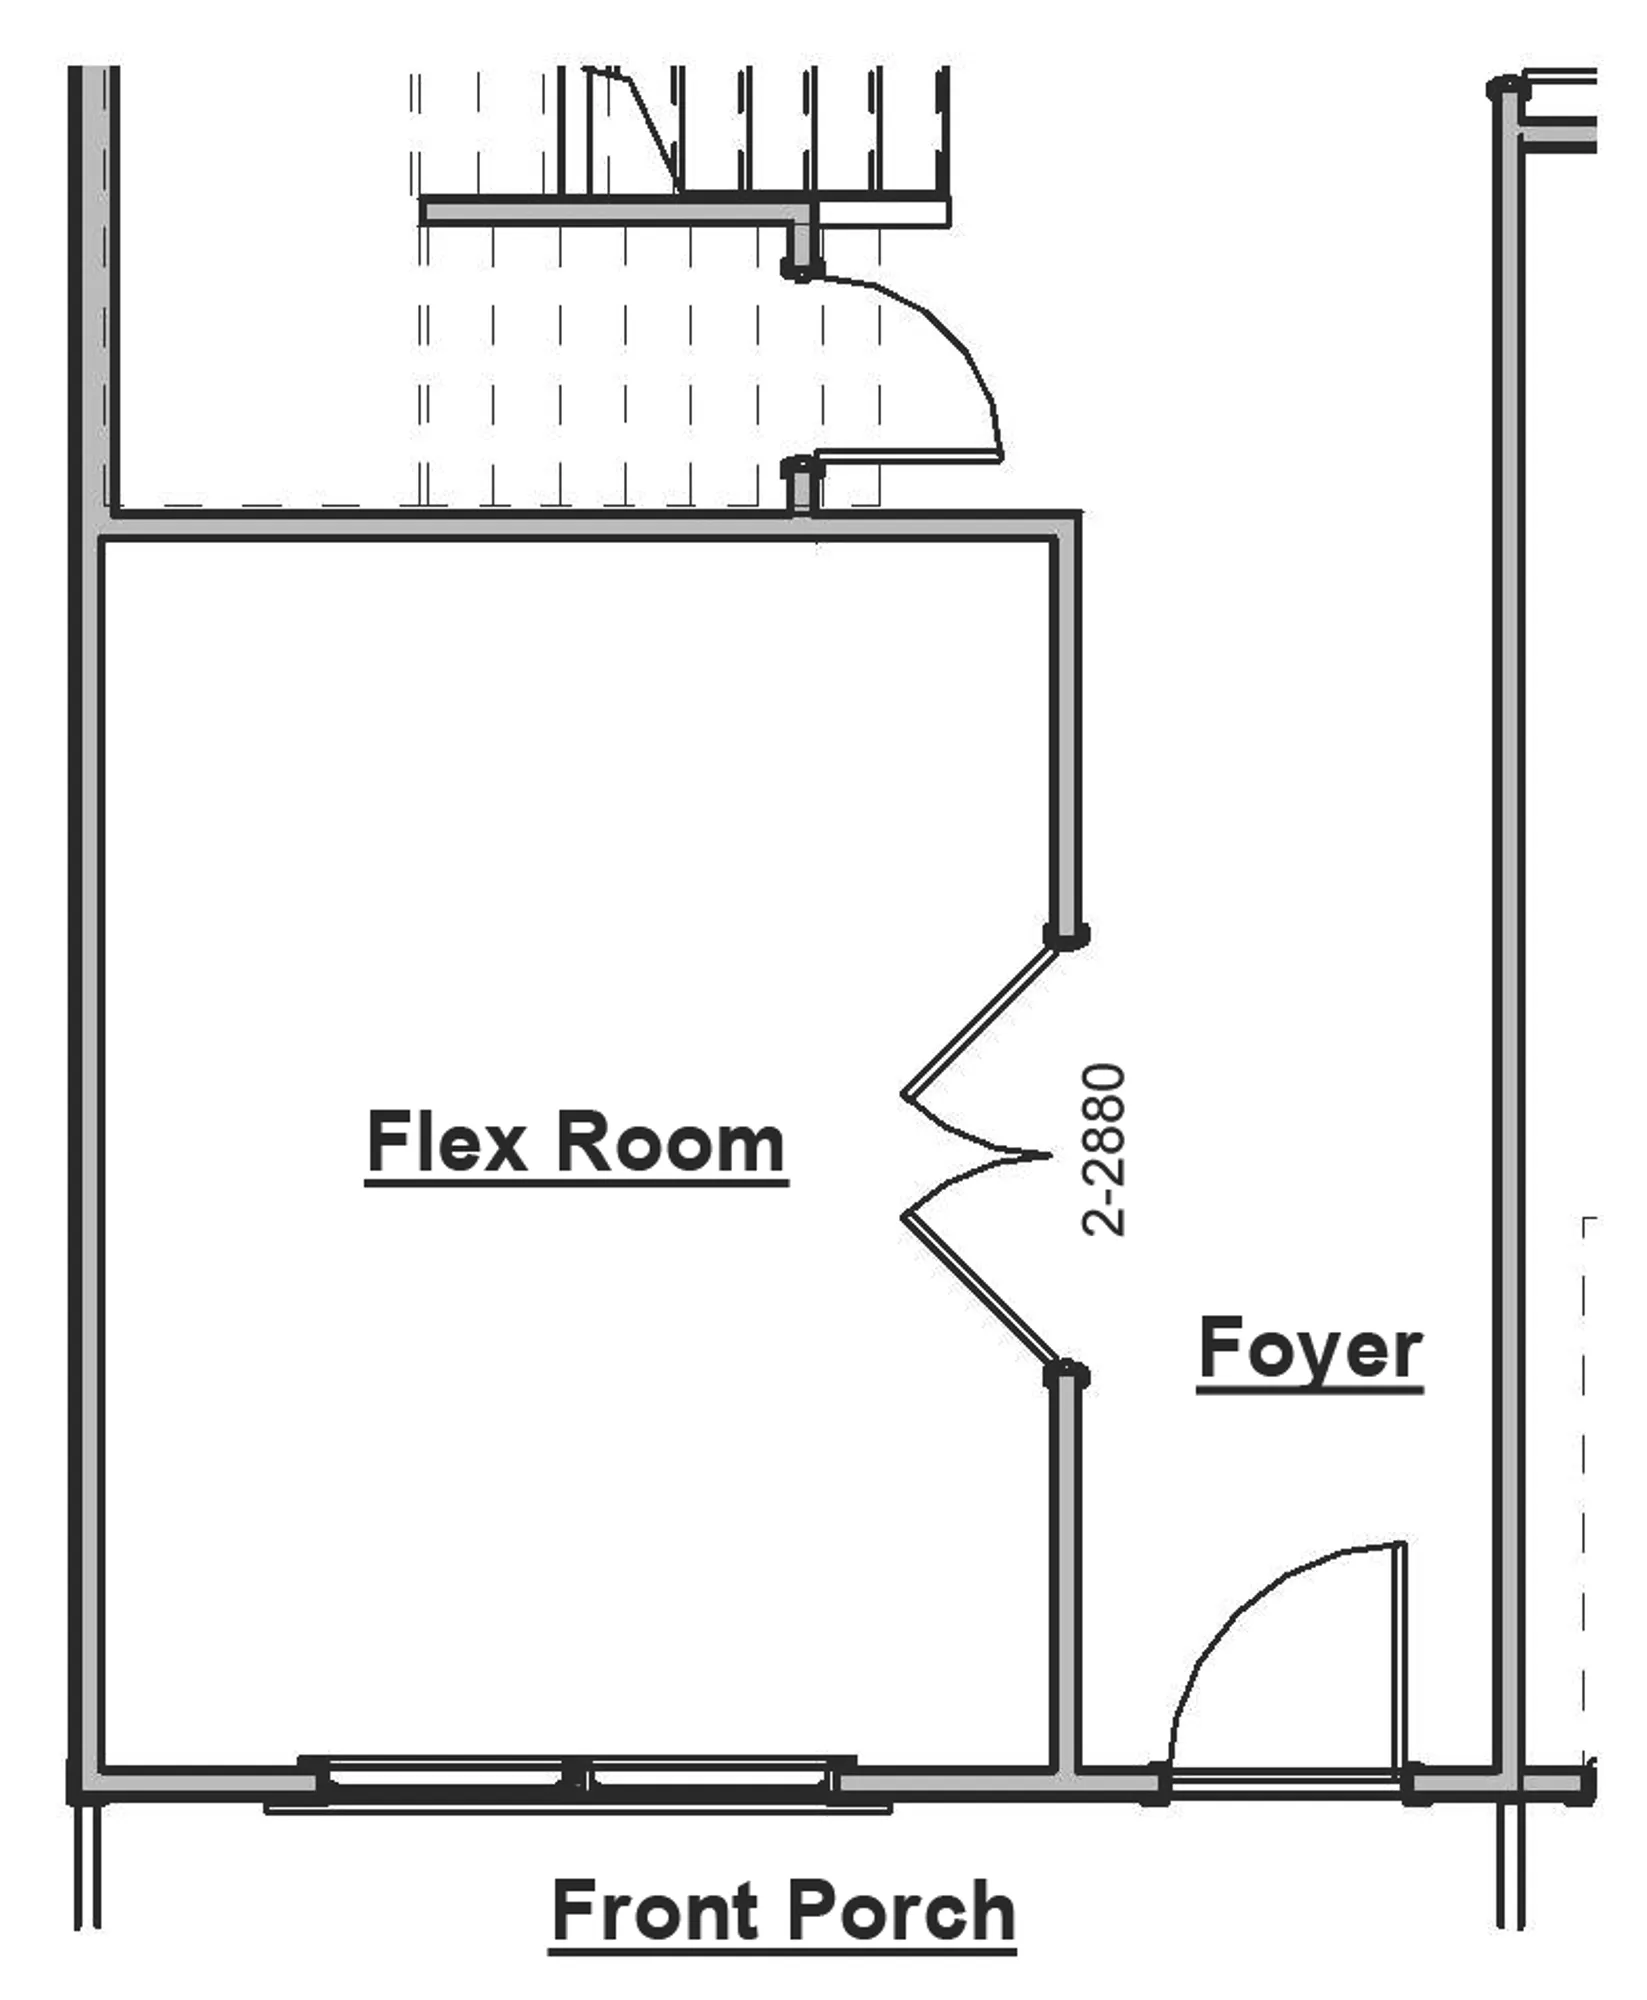 Flex Room Doors Option - undefined